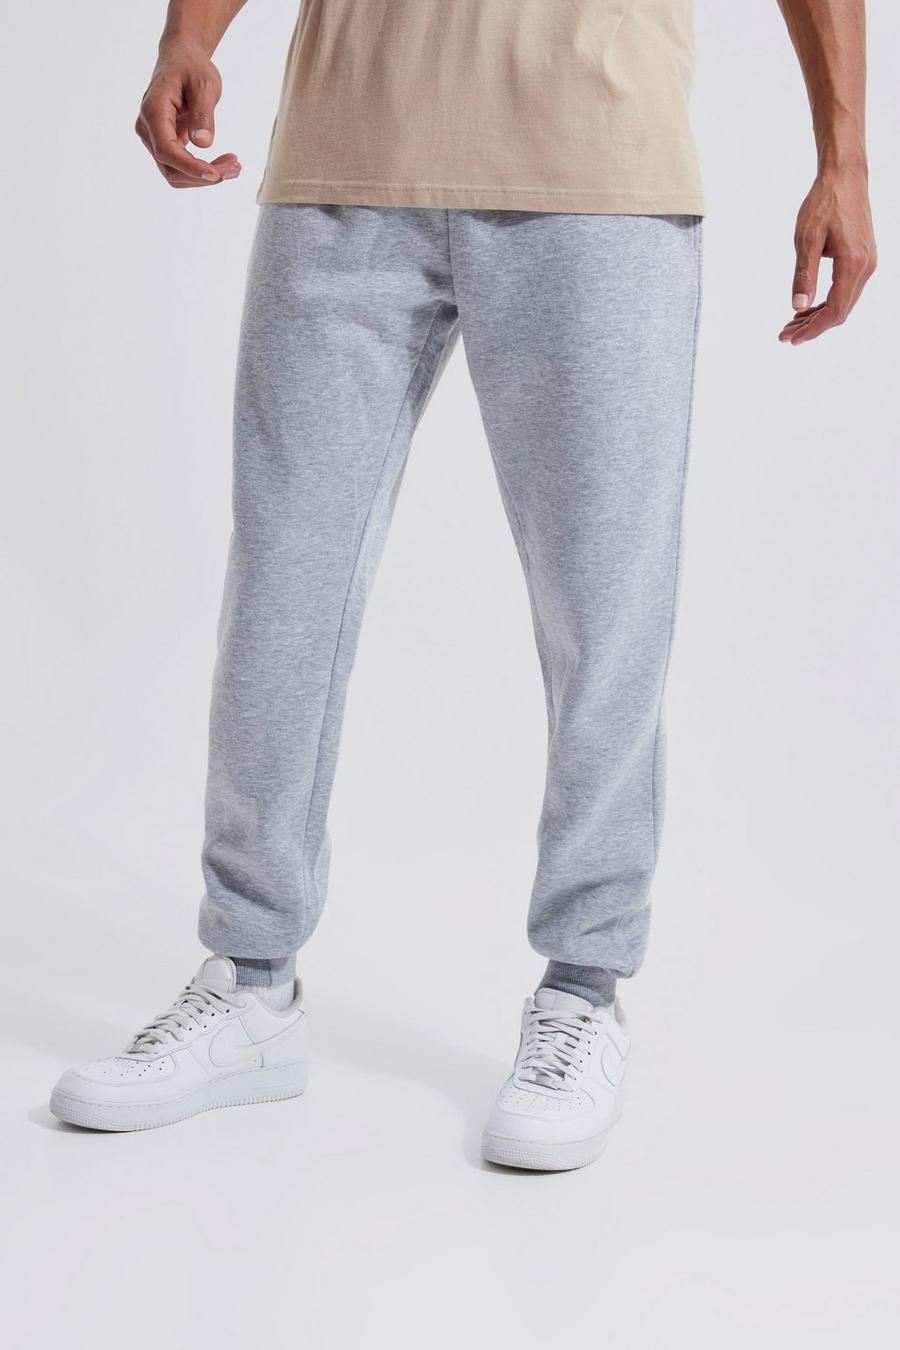 סלע אפור grey מכנסי טרנינג בייסיק בגזרה רגילה, לגברים גבוהים